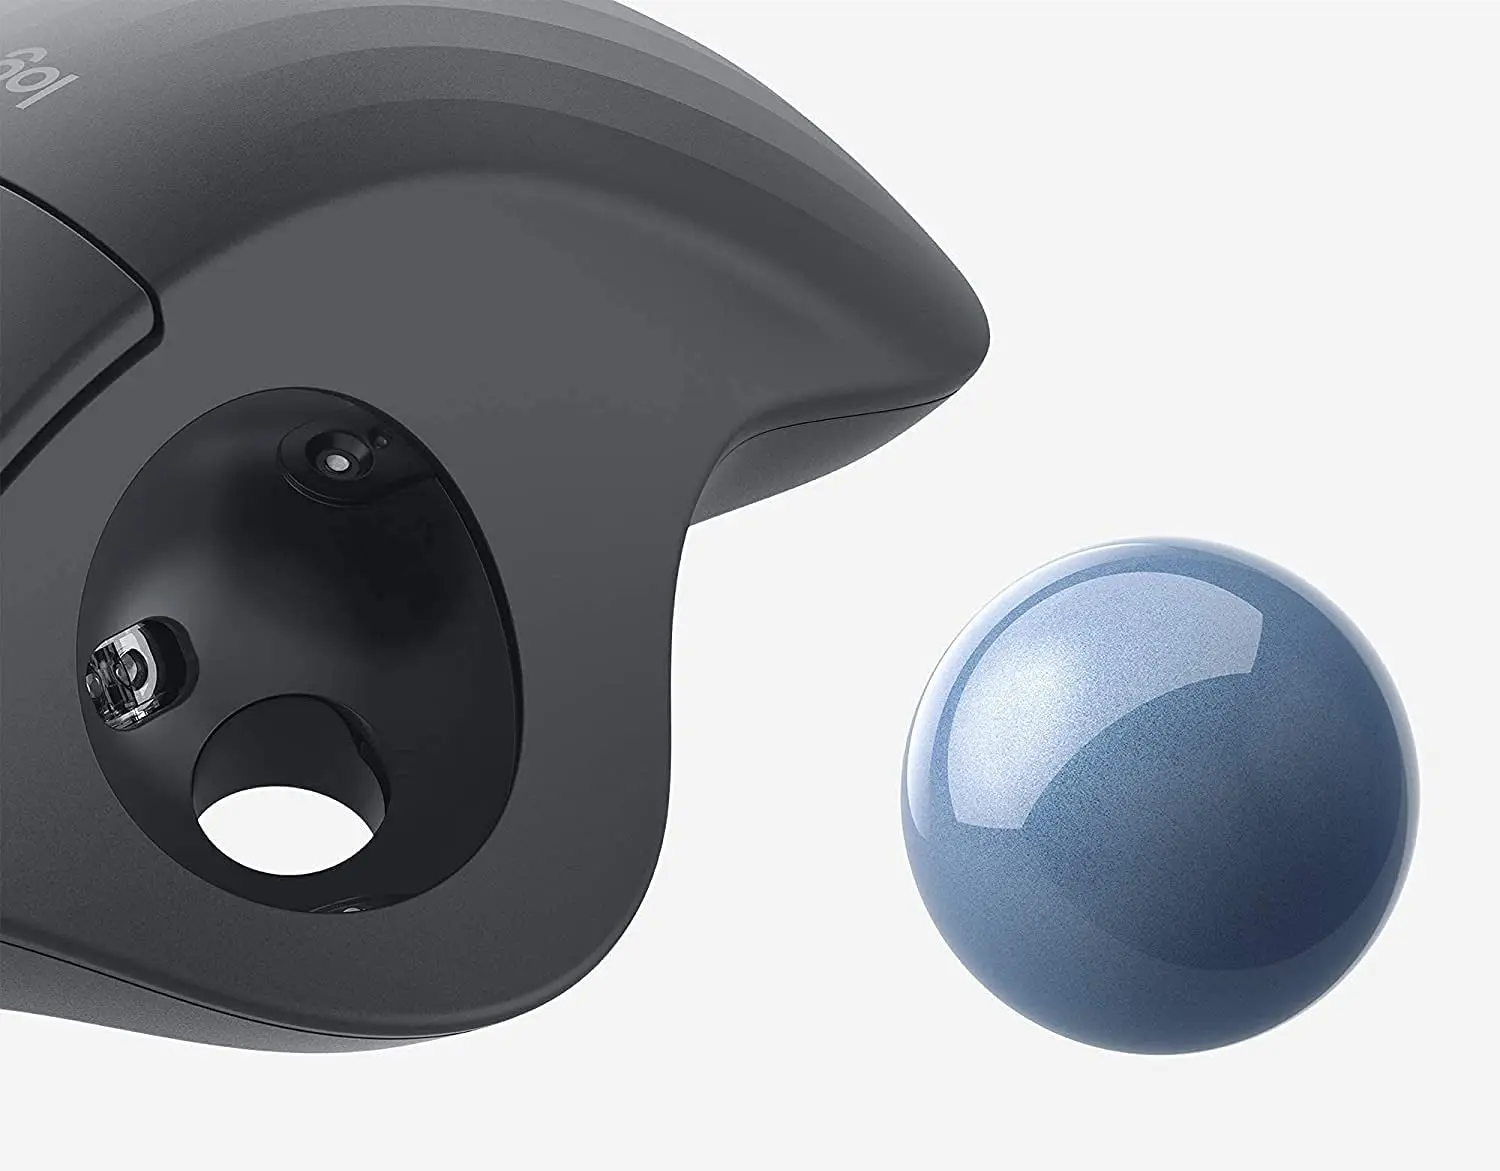 Replacement Ball for Logitech MX Ergo Wireless Trackball Mouse/M570/ ergo M575 Wireless Trackball Mouse